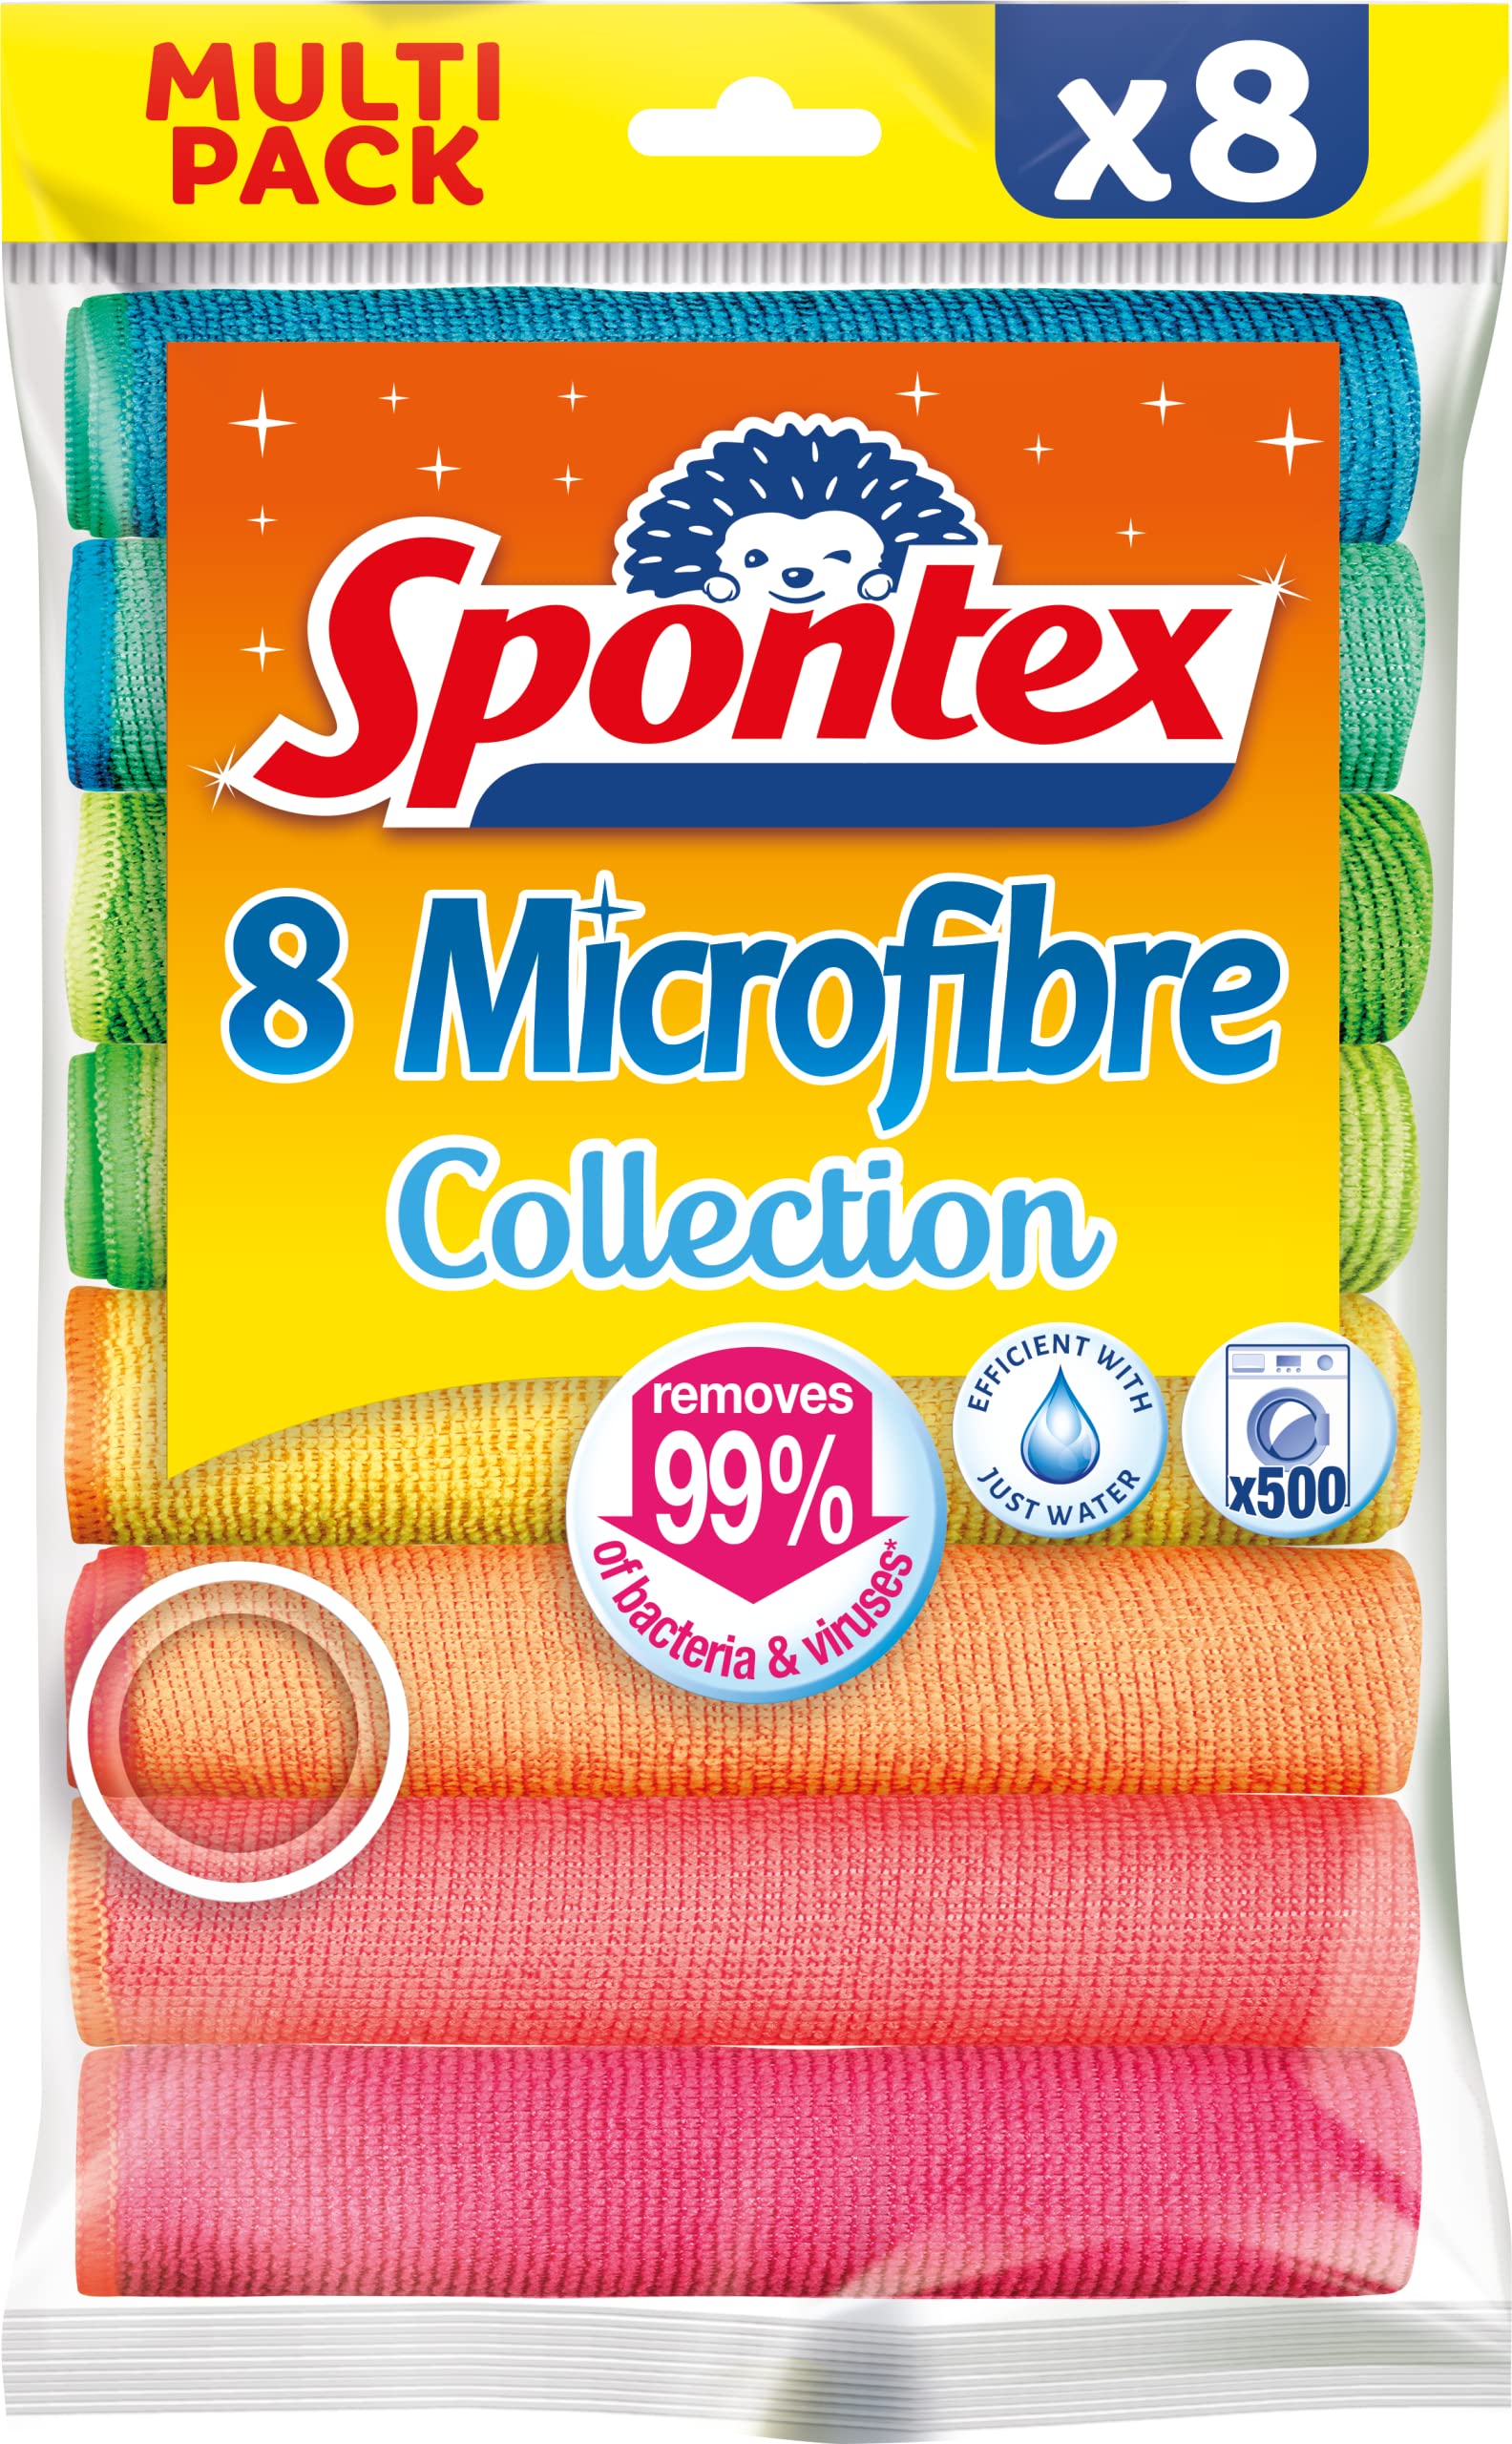 SPONTEX - Microfibre Collection - Multi-purpose Microfibers - 8 Microfibers  Set of 8 Microfibers 8 Microfibres